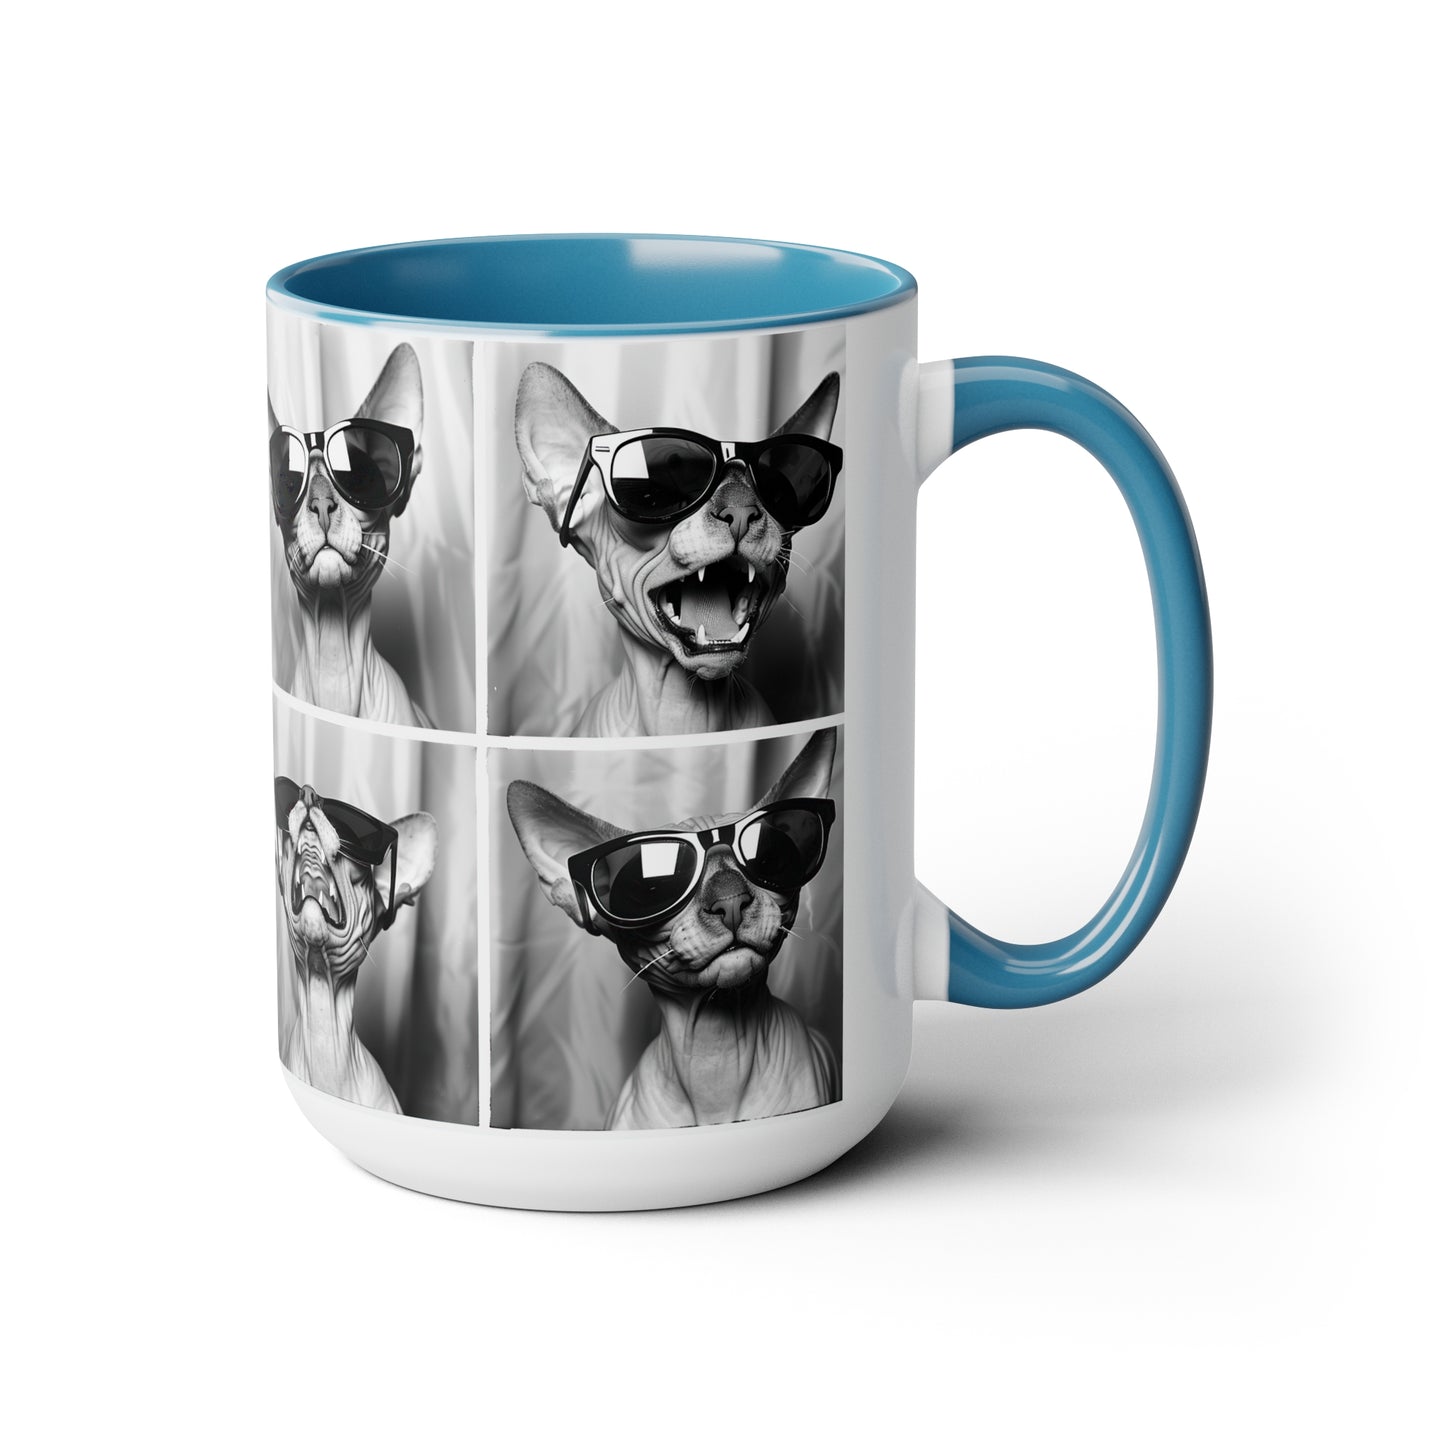 Sphynx Cat Accent Coffee Mug, 11oz